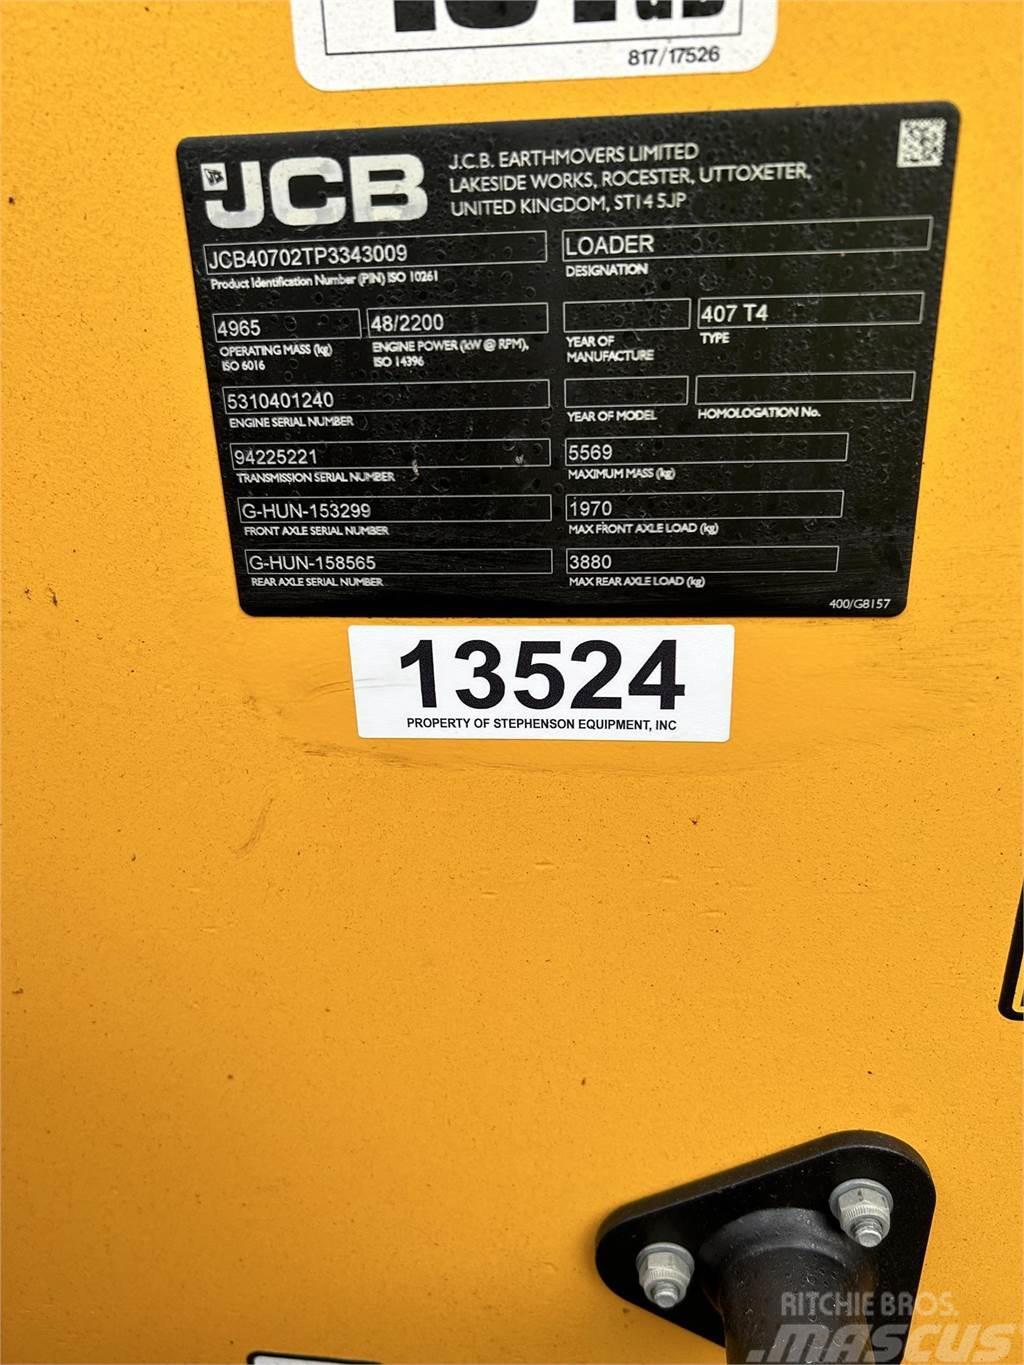 JCB 407 Gumikerekes homlokrakodók